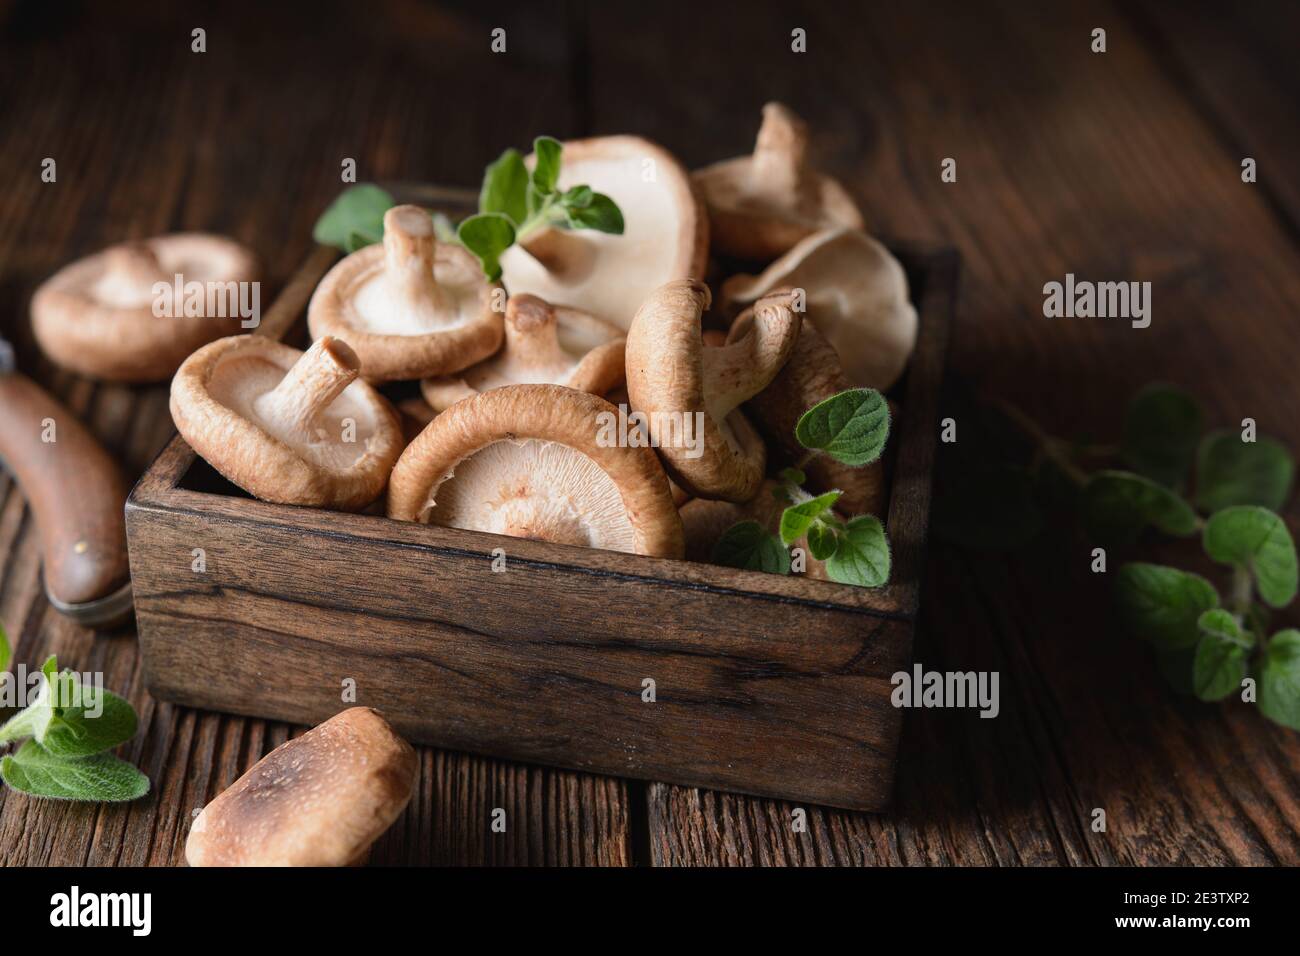 Tas d'immunité stimulant les champignons Shiitake frais dans un bol sur fond de bois rustique Banque D'Images